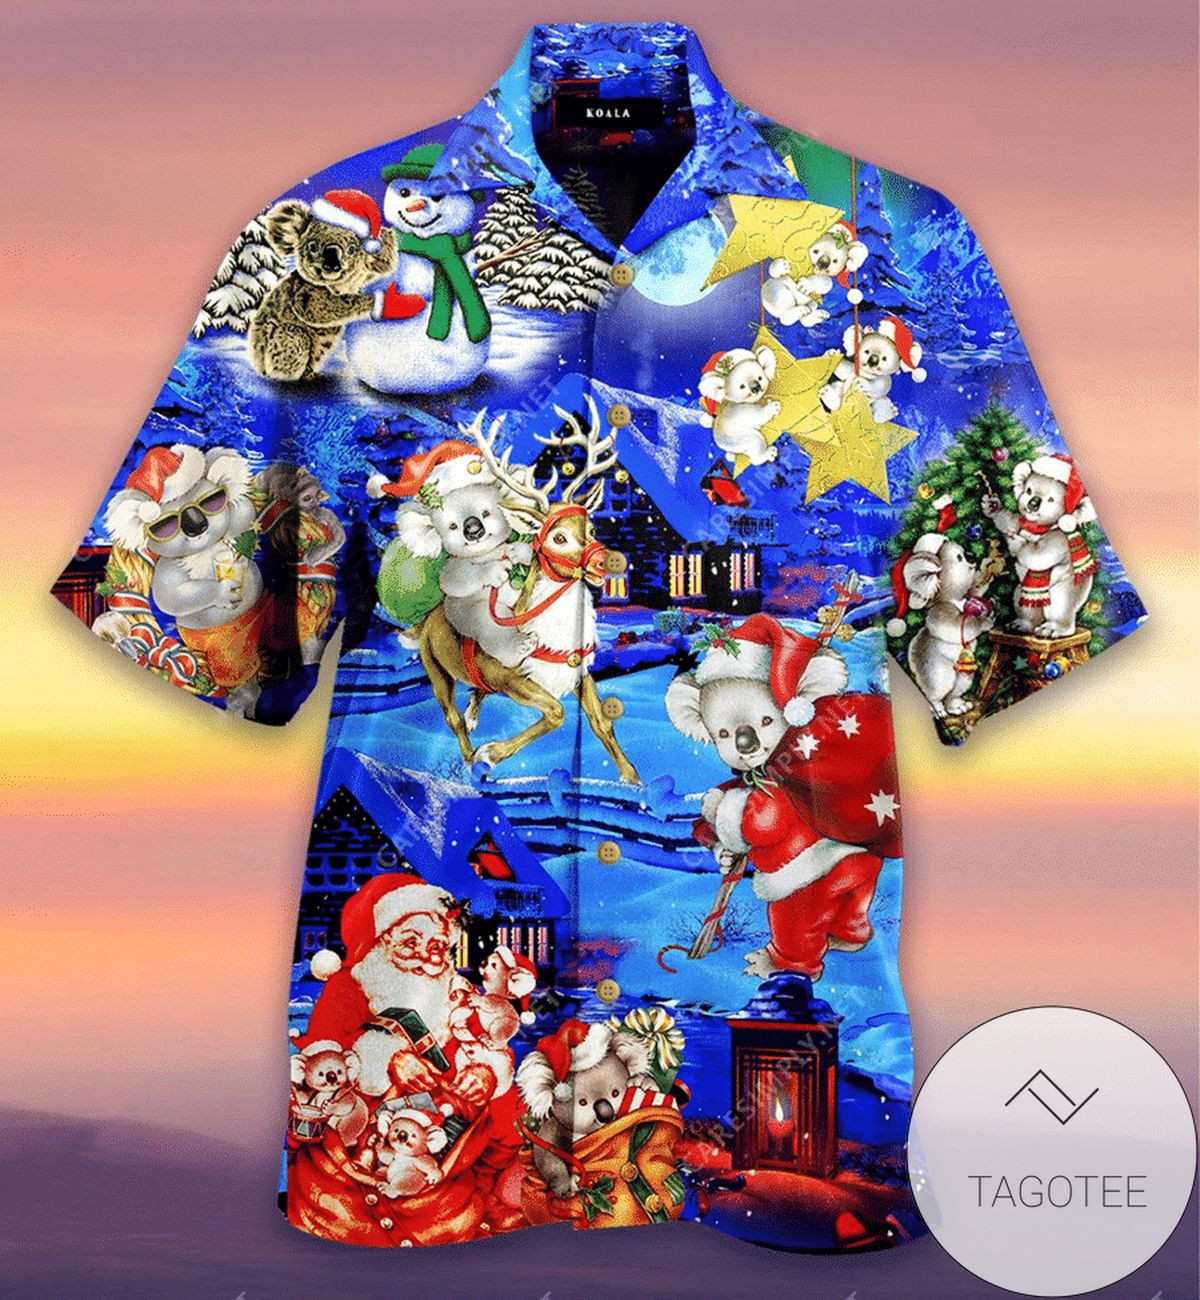 Find Hawaiian Aloha Shirts Cute Koala Christmas